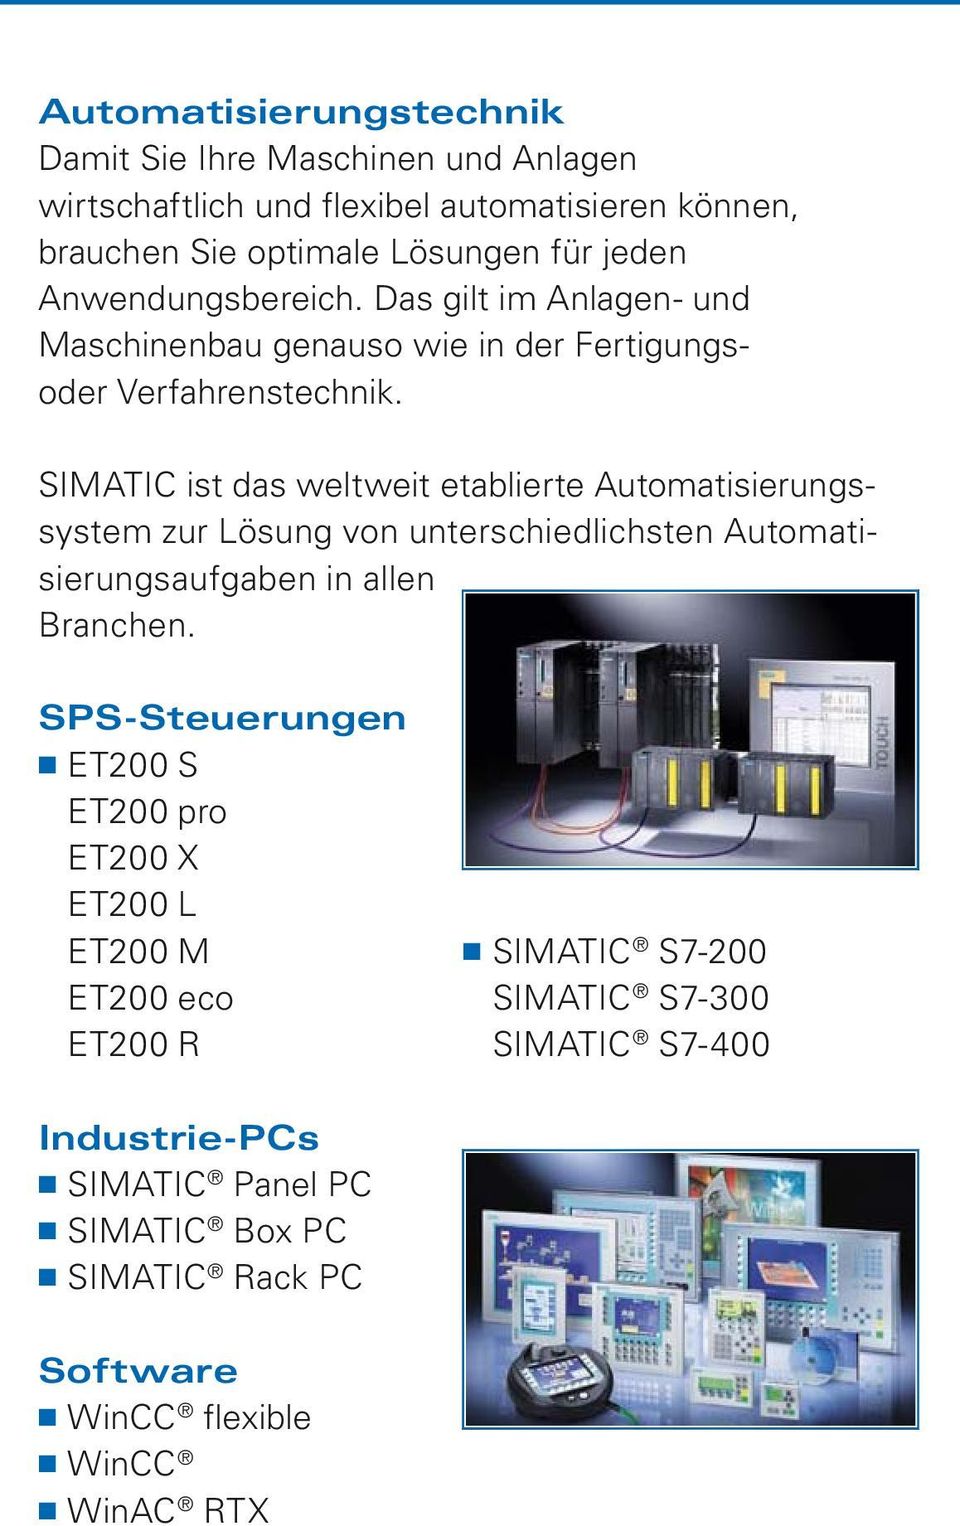 SIMATIC ist das weltweit etablierte Automatisierungssystem zur Lösung von unterschiedlichsten Automatisierungsaufgaben in allen Branchen.